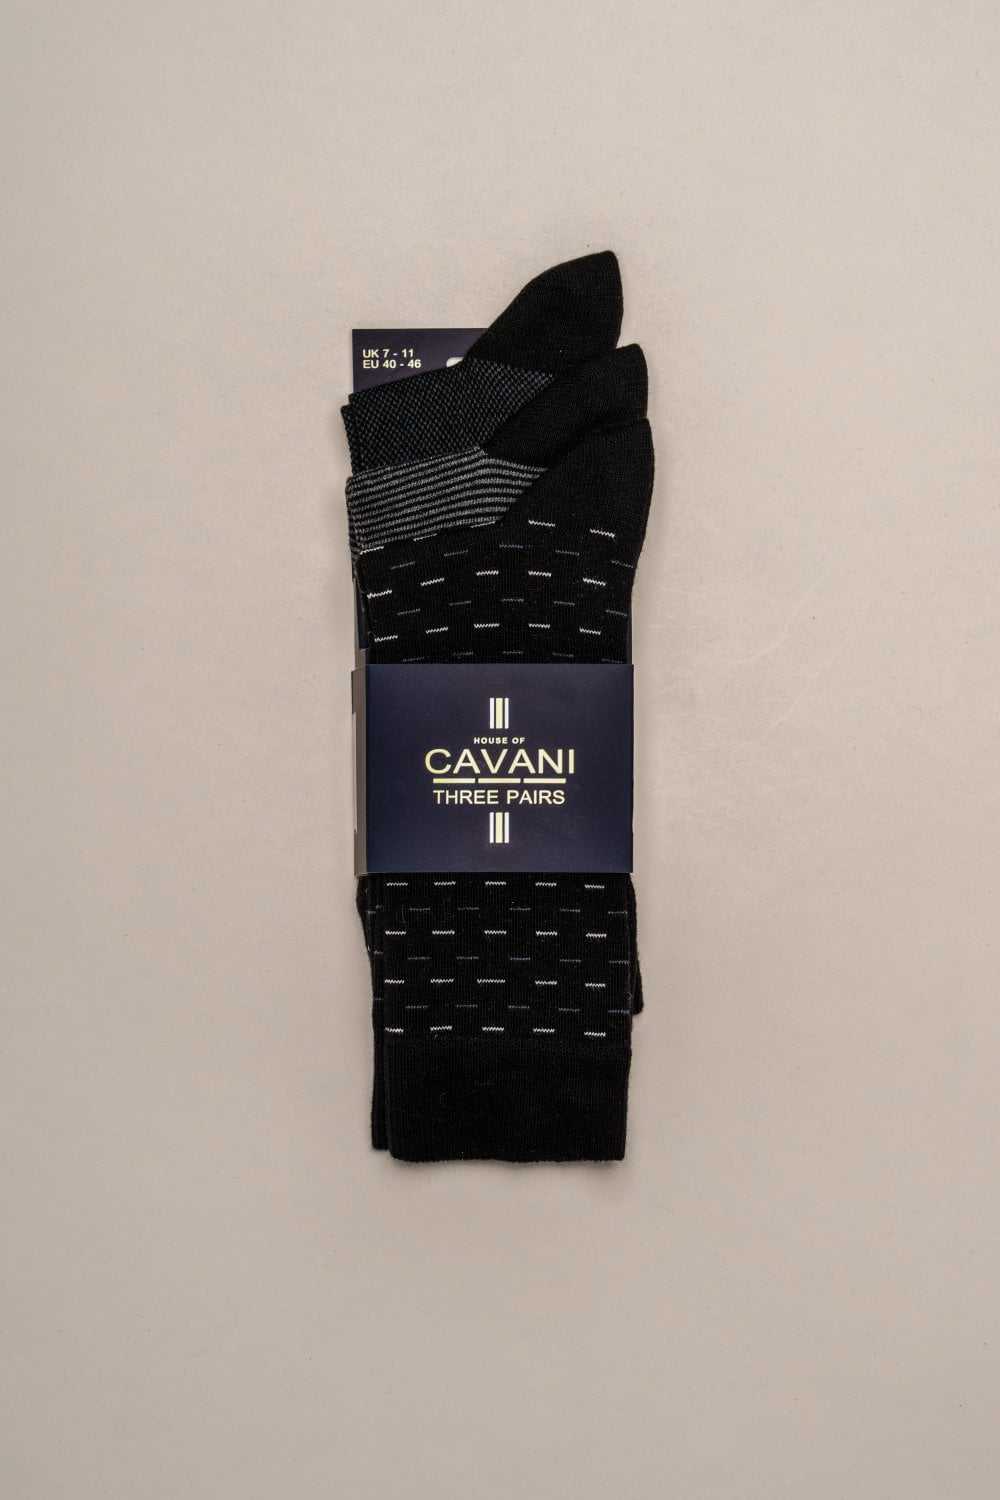 Chaussettes Cavani Tarossa 3 paires